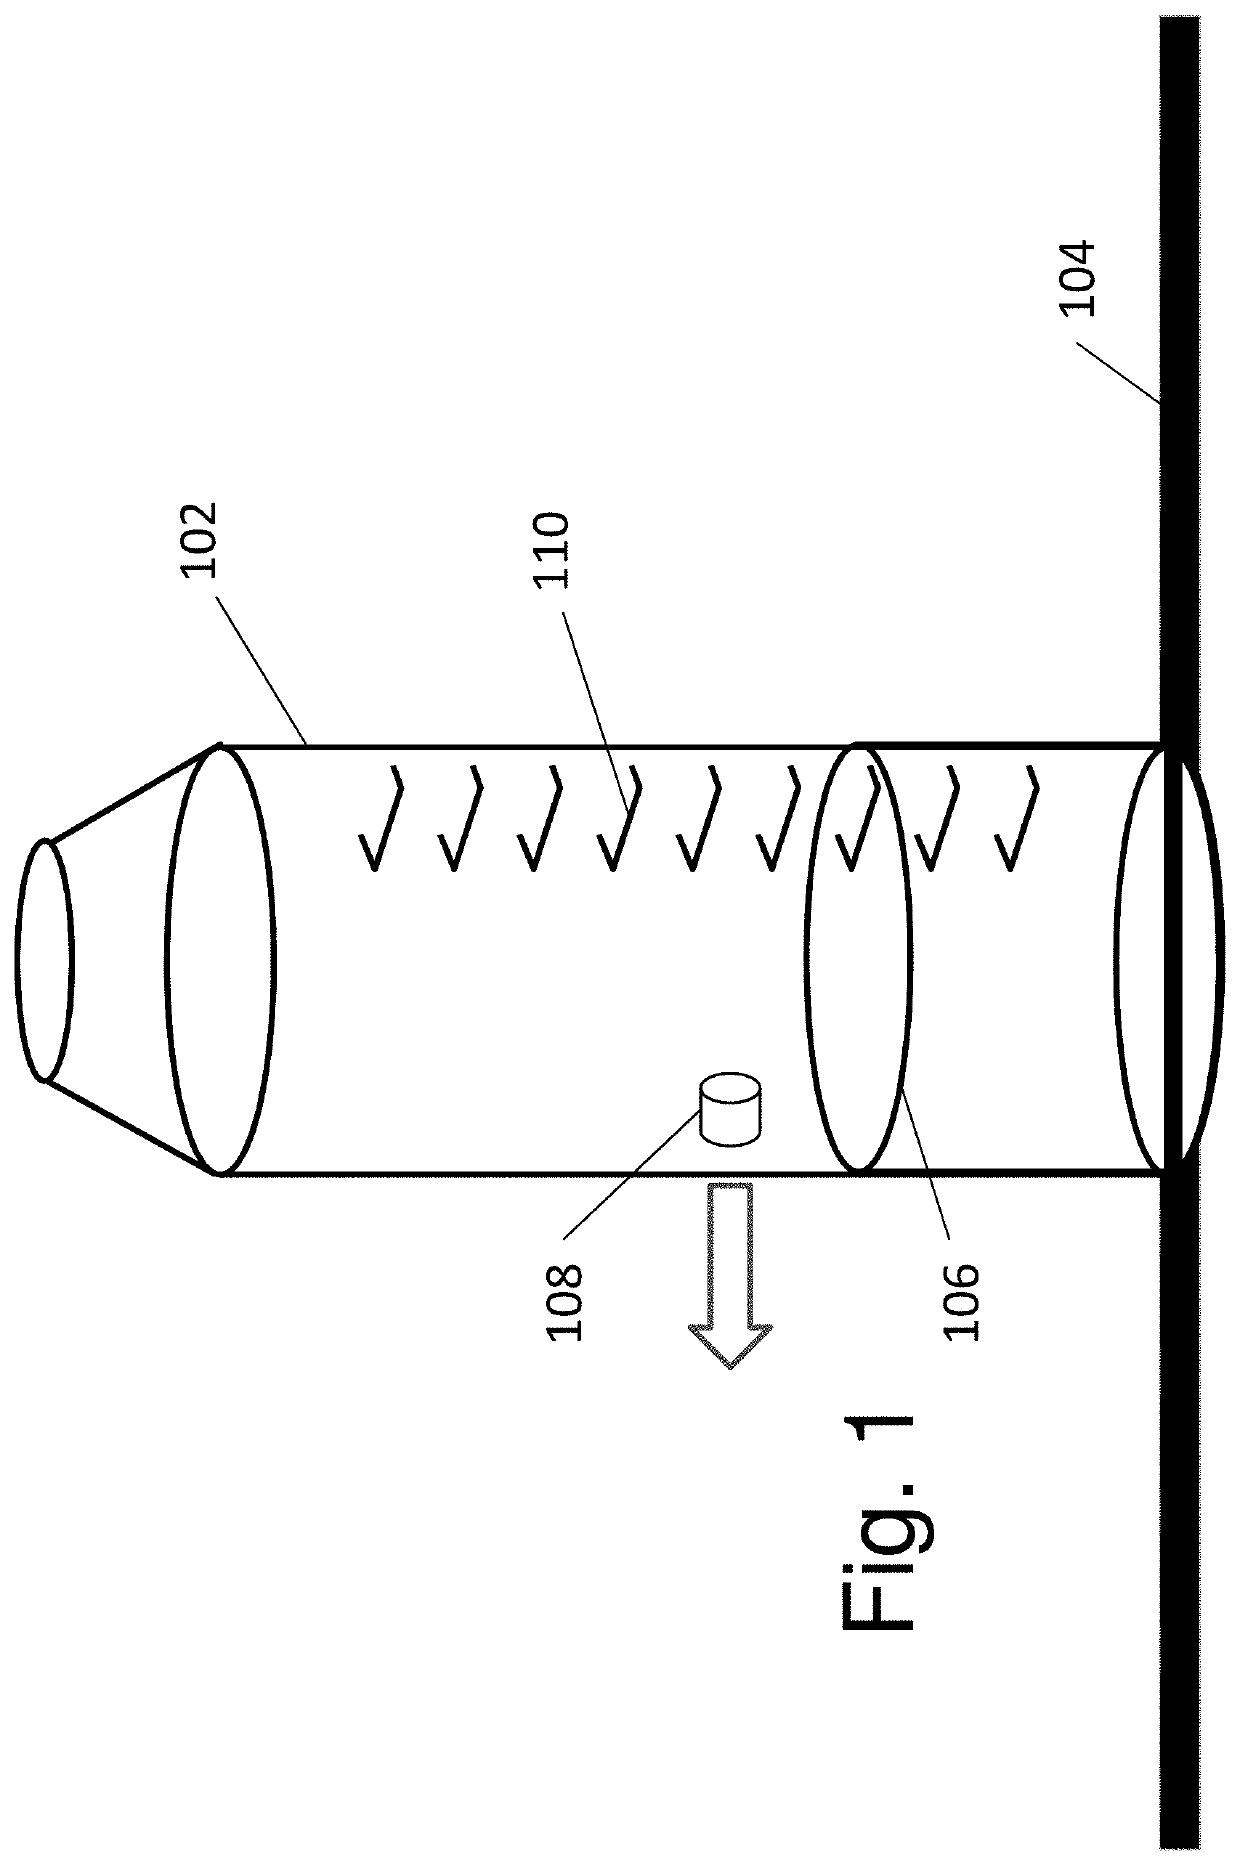 Level sensor with parabolic reflector